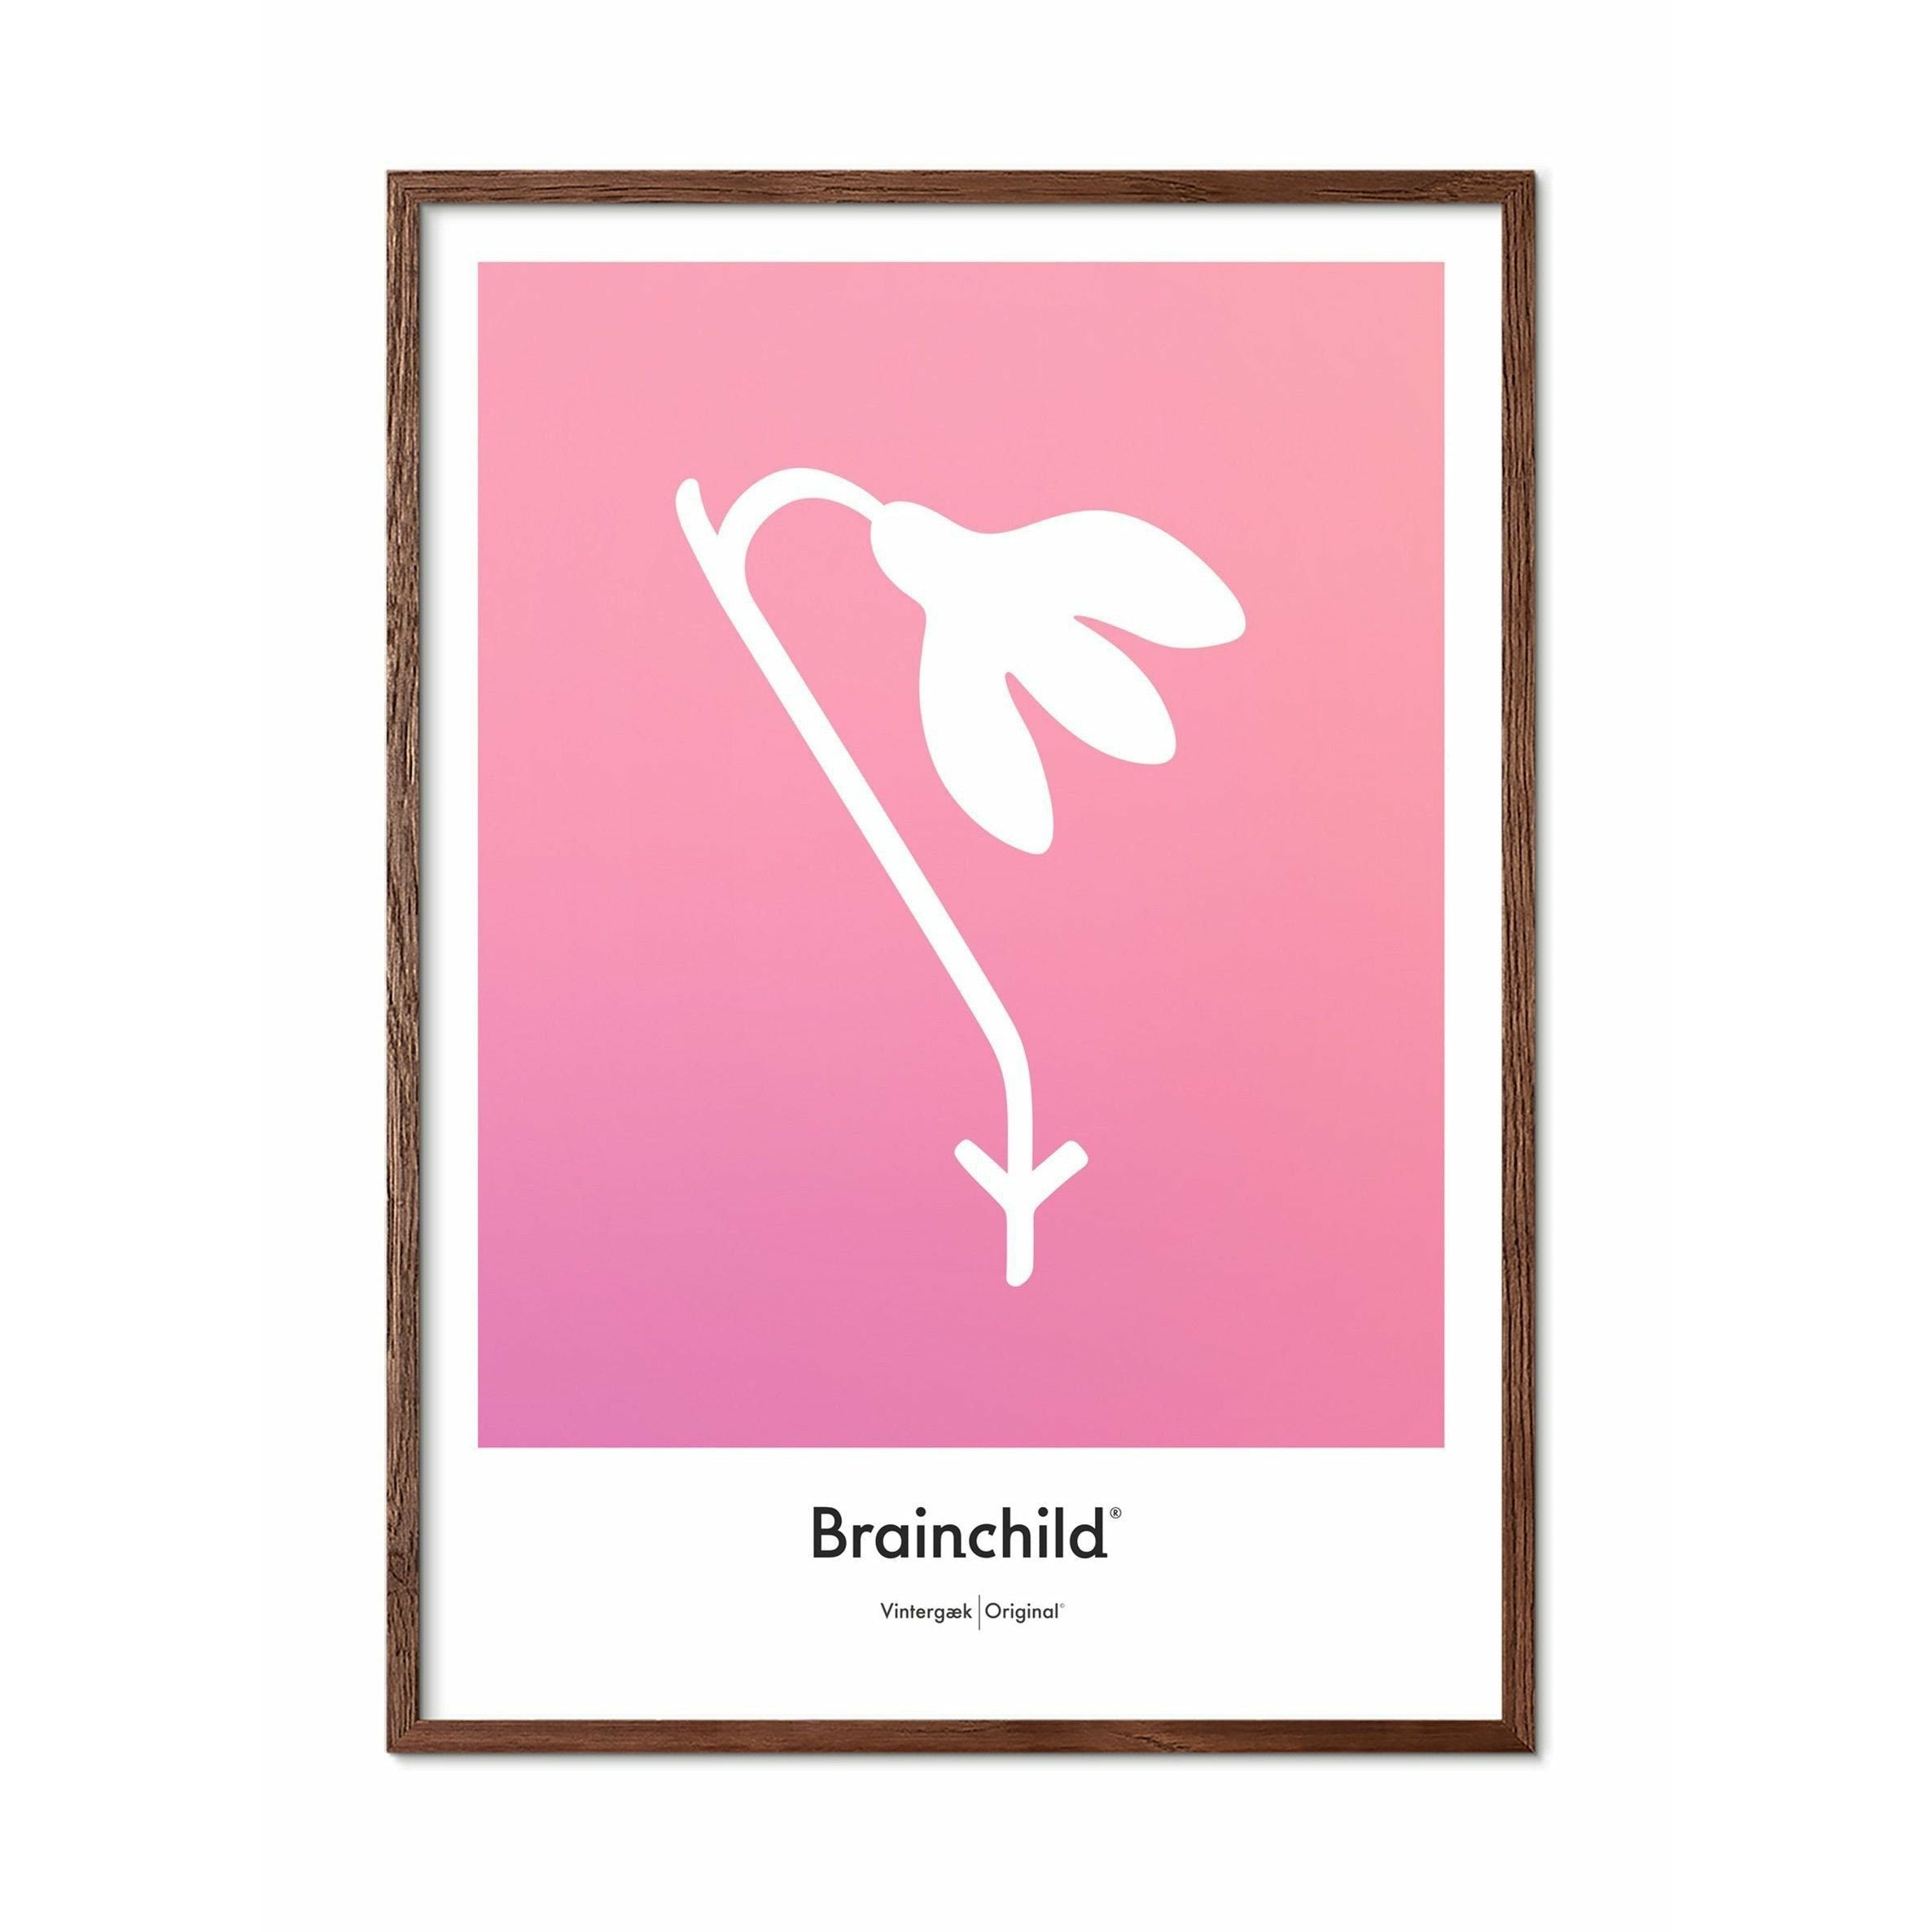 Brainchild Schneeglöckchen Design Icon Poster, Rahmen aus dunklem Holz 30x40 Cm, Rosa